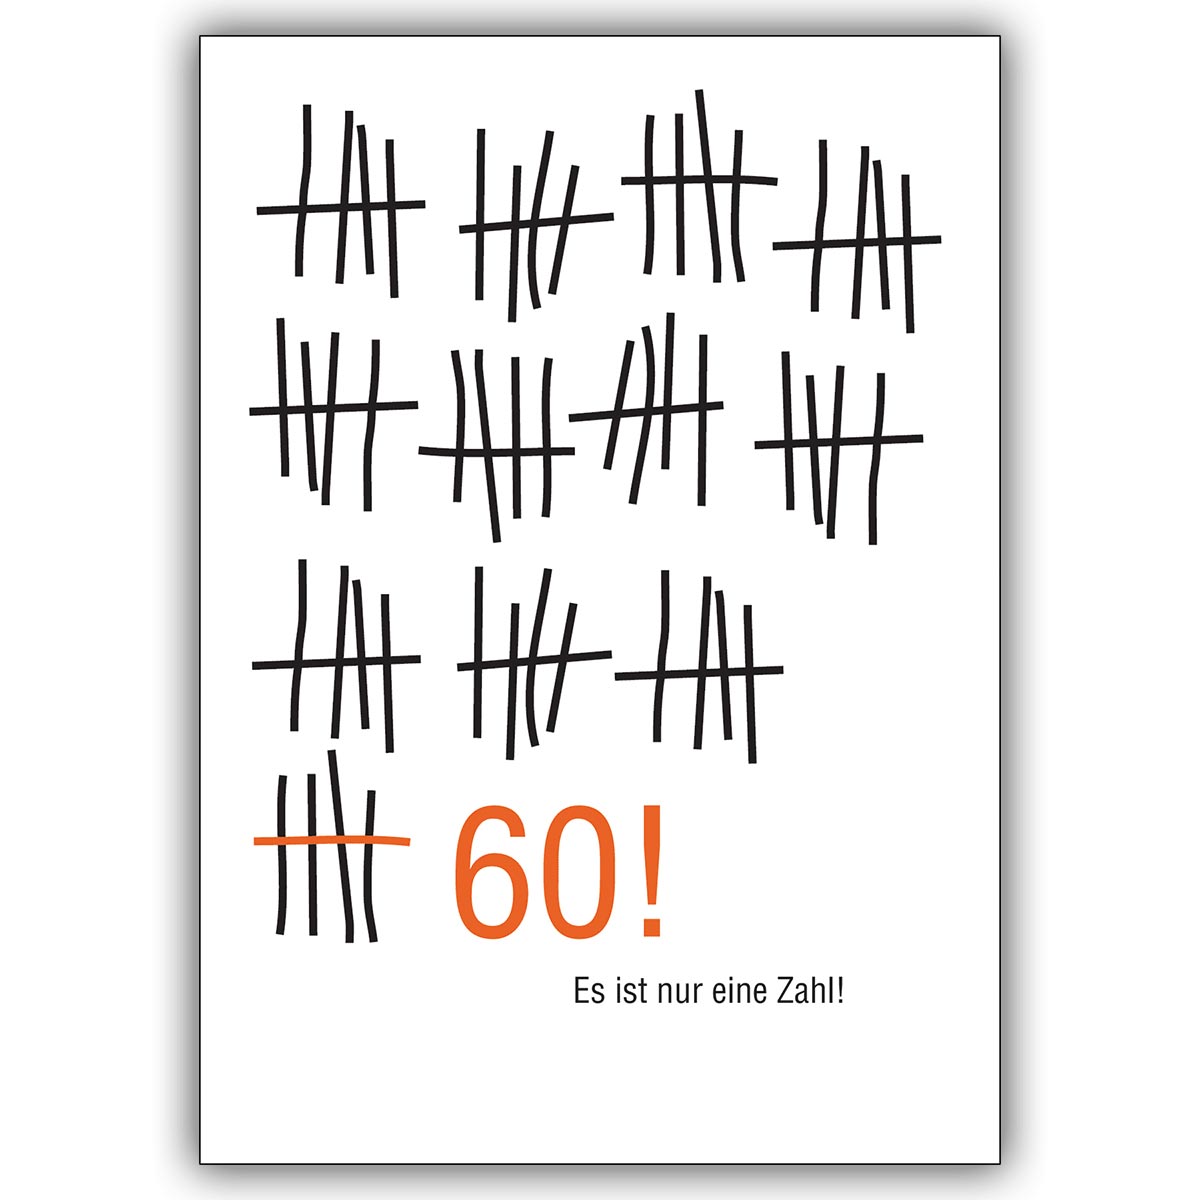 Amüsante Geburtstagskarte zum 60. Geburtstag im Strich-Listen Look: Es ist nur eine Zahl!